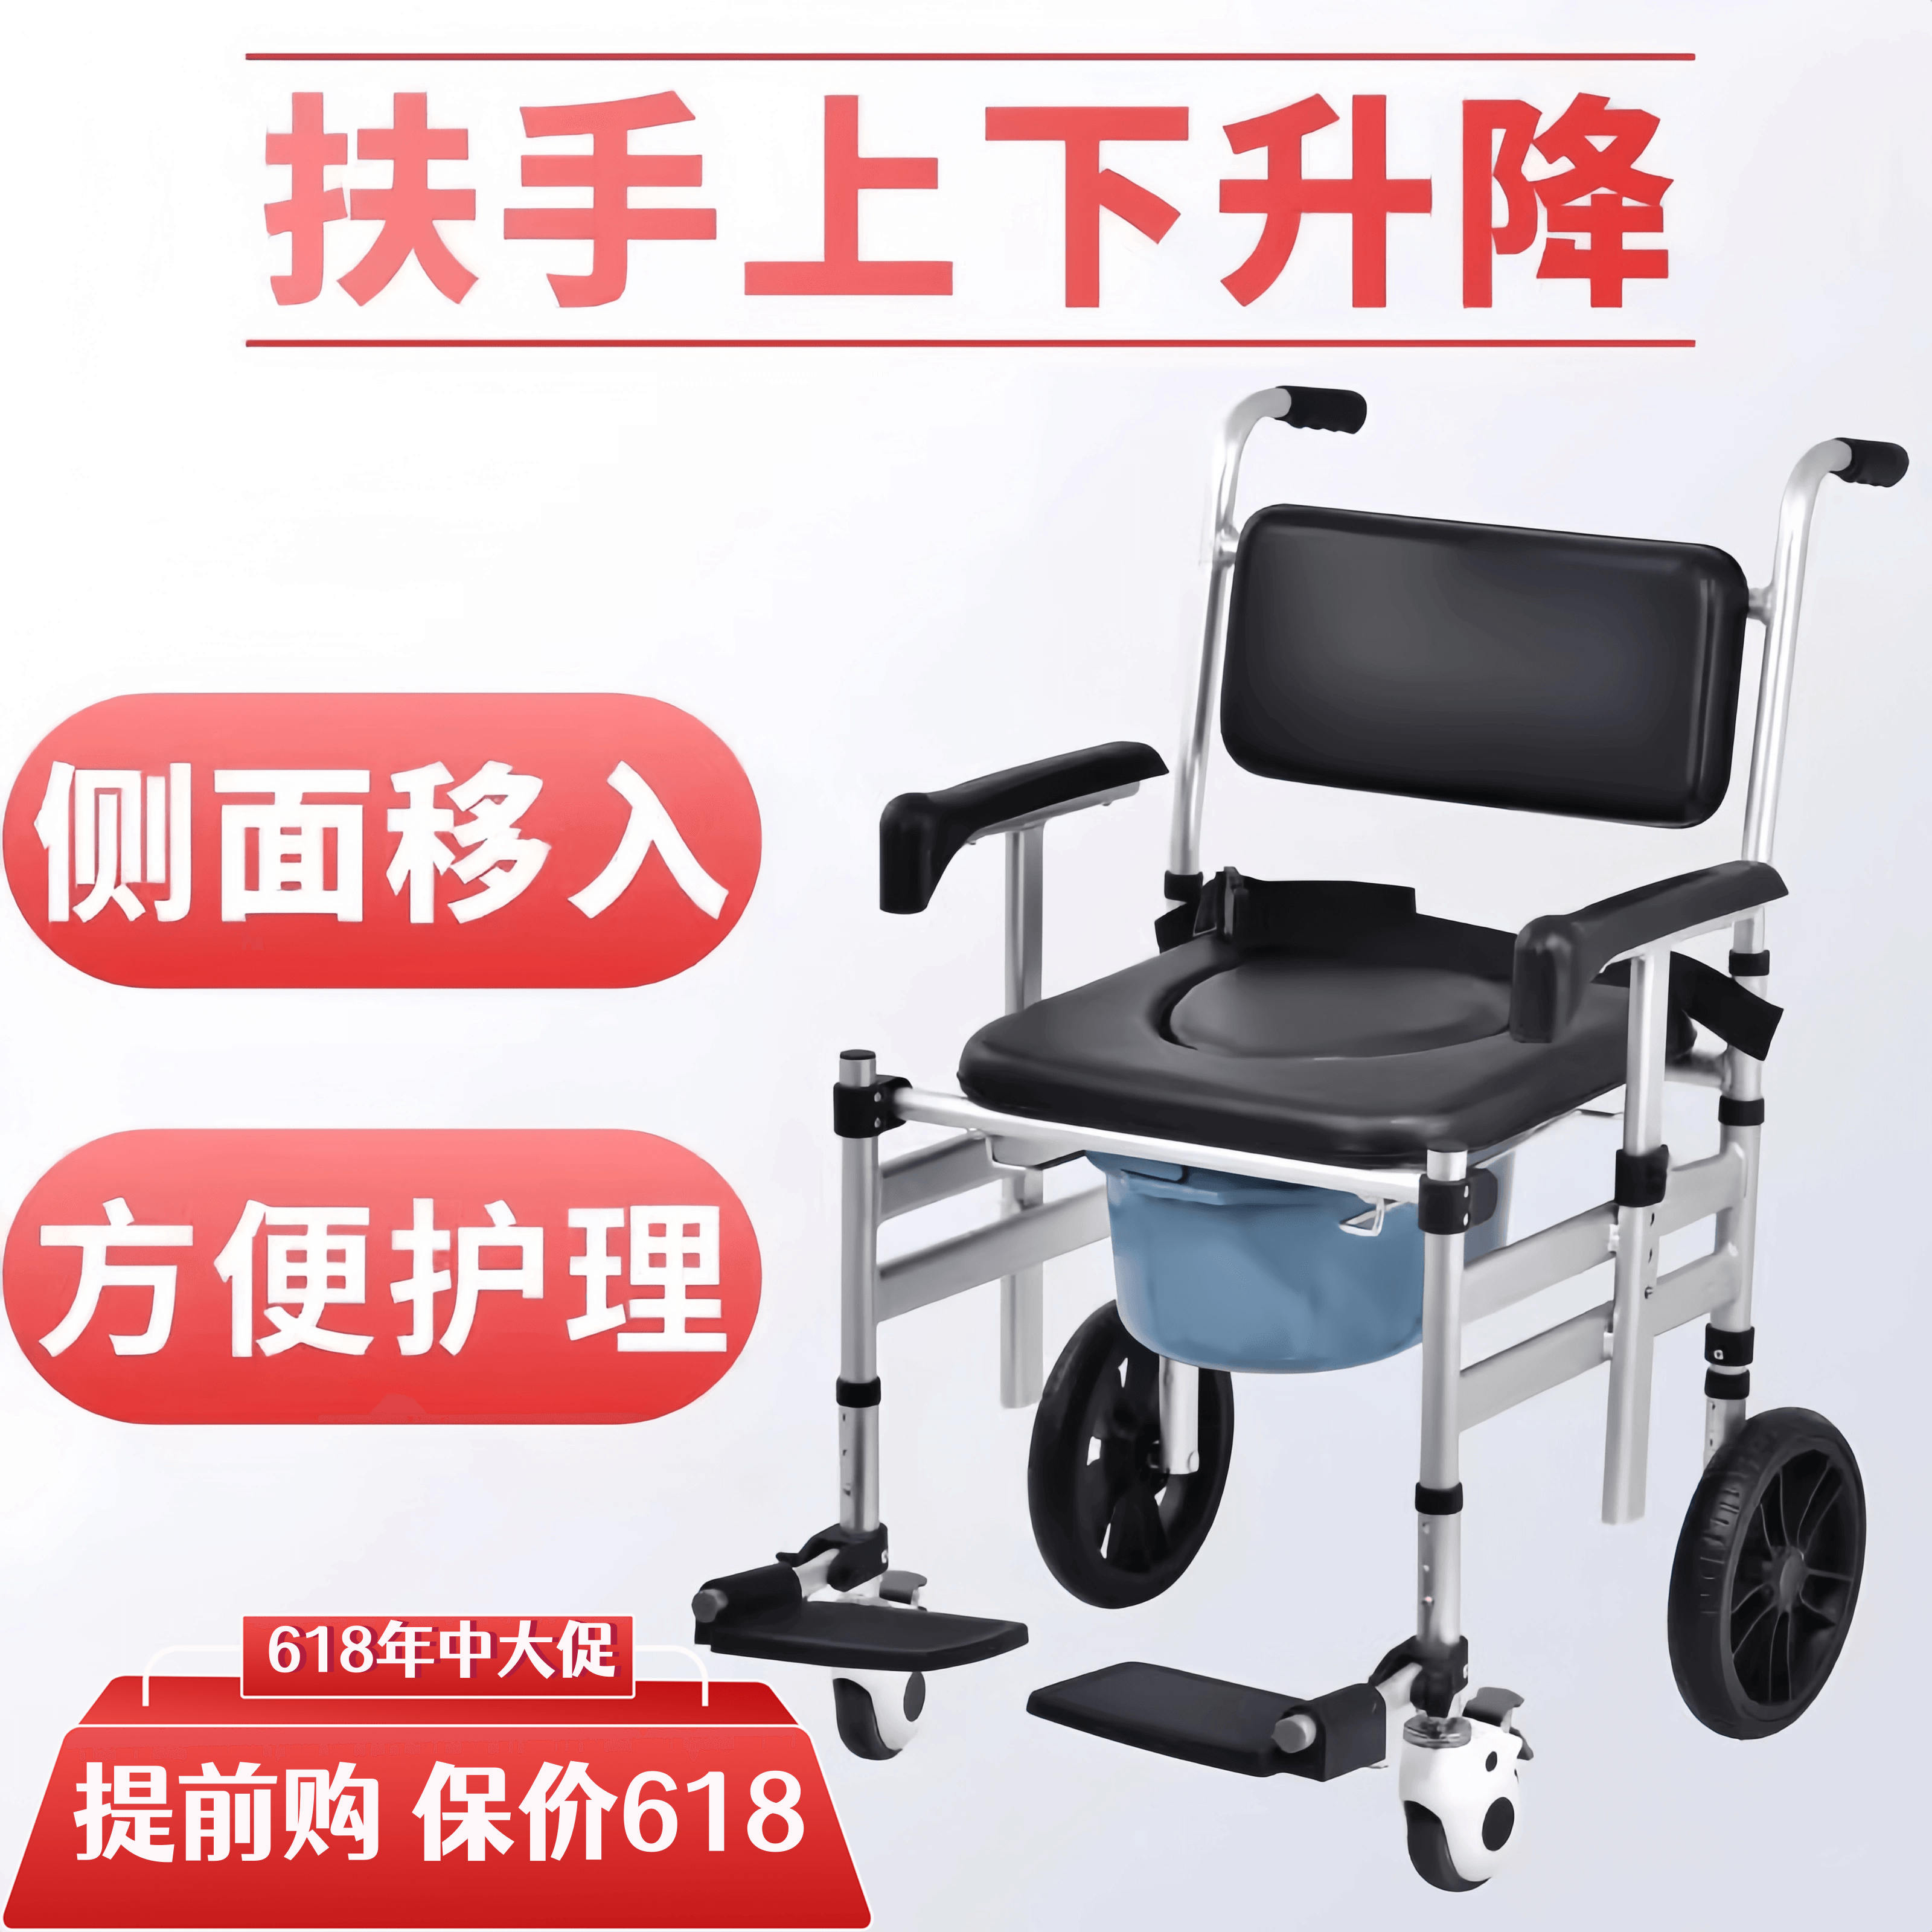 带轮子老人坐便椅可折叠残疾人家用移动洗澡椅坐便器大便椅沐浴椅 保健用品 便厕用具 原图主图